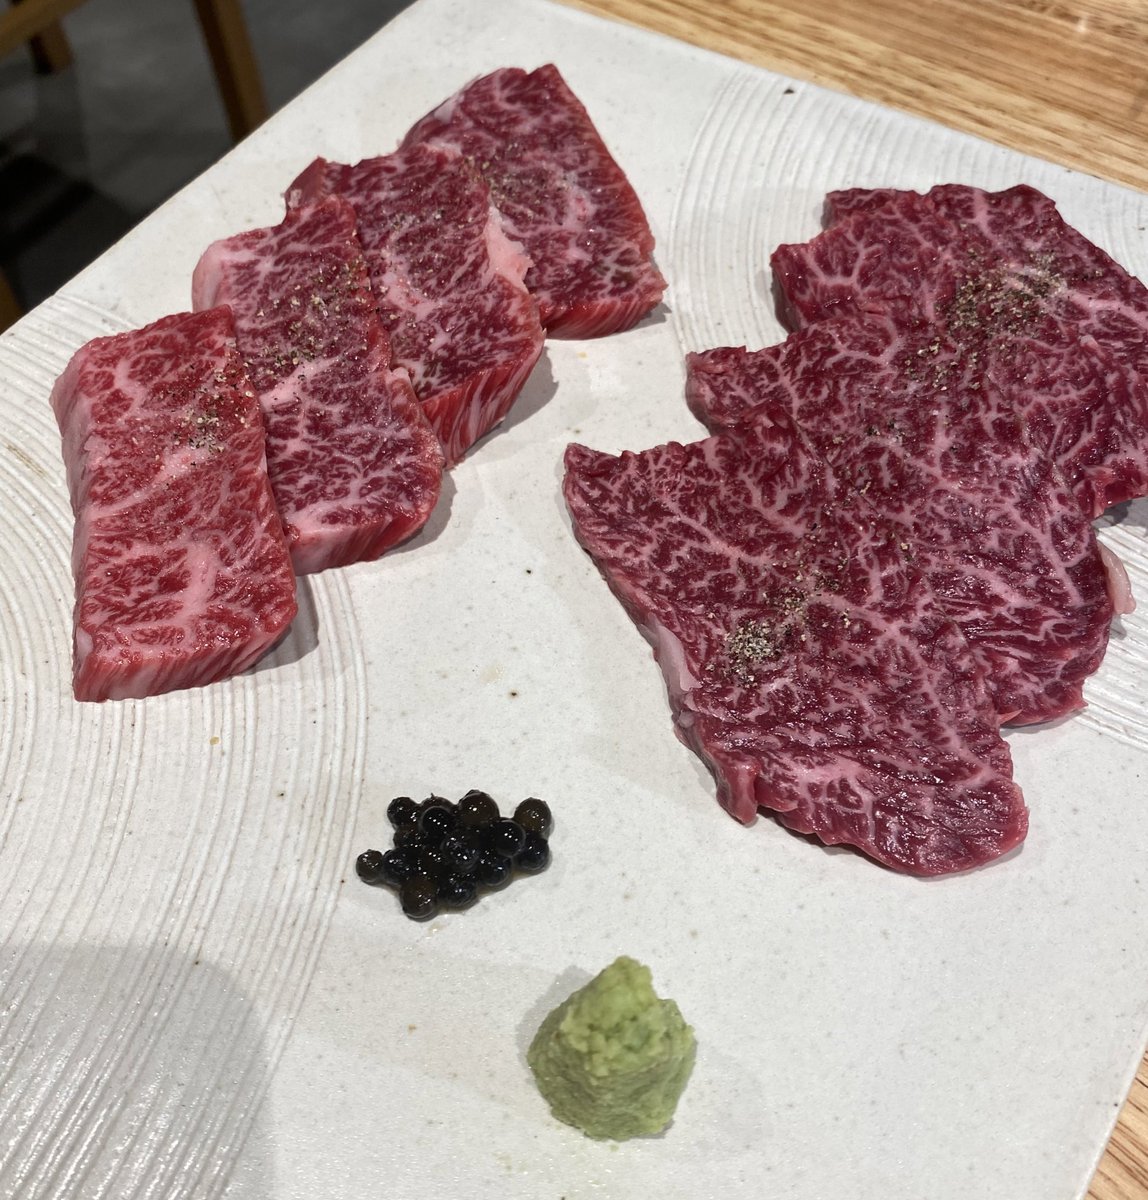 📍 焼肉うしこぞう 新宿店
肉小僧グループの焼肉屋🍖
歌舞伎町のど真ん中にあり、綺麗な店内
お肉はどれもオススメ！必ず頼むのはタン🐖
#デコメシ